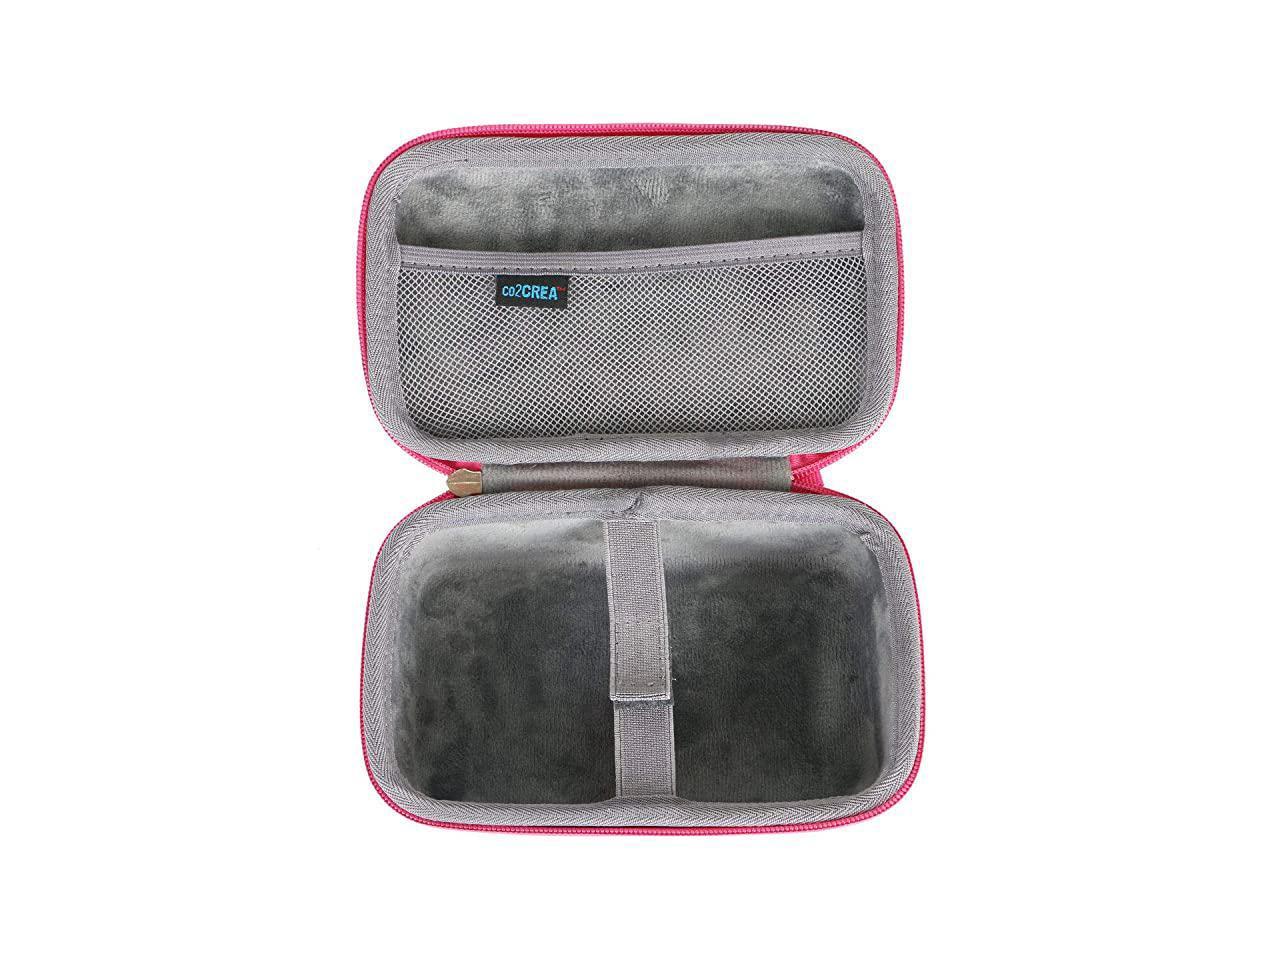 Pink VTech Kidizoom Travel Bag 